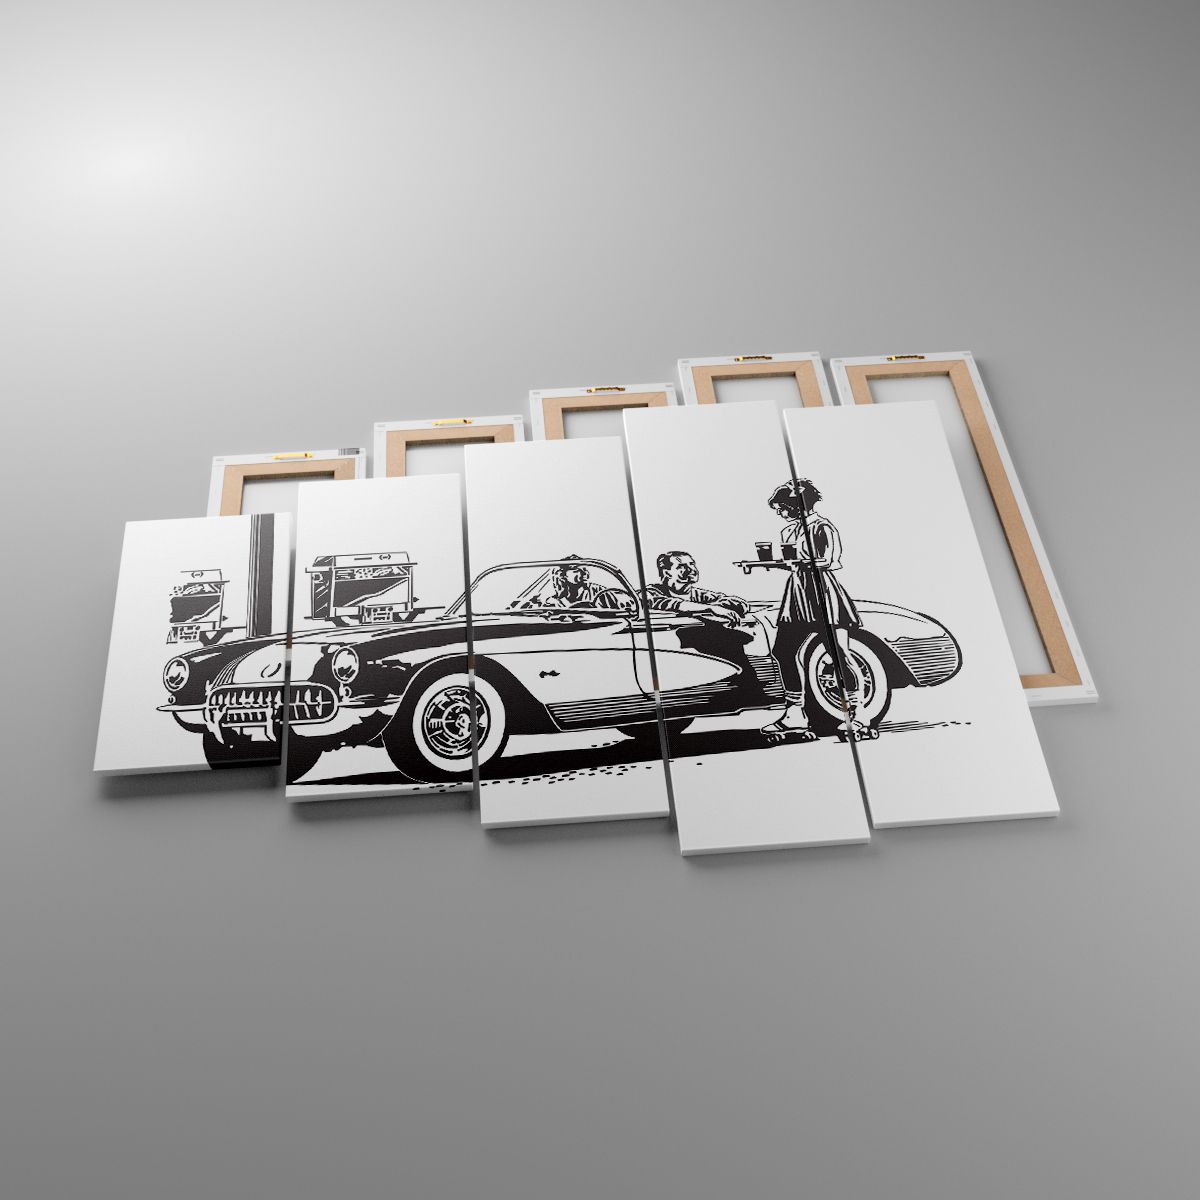 Obrazy Samochód Vintage, Obrazy Stacja Benzynowa, Obrazy Ameryka, Obrazy Motoryzacja, Obrazy Czarno-Biały